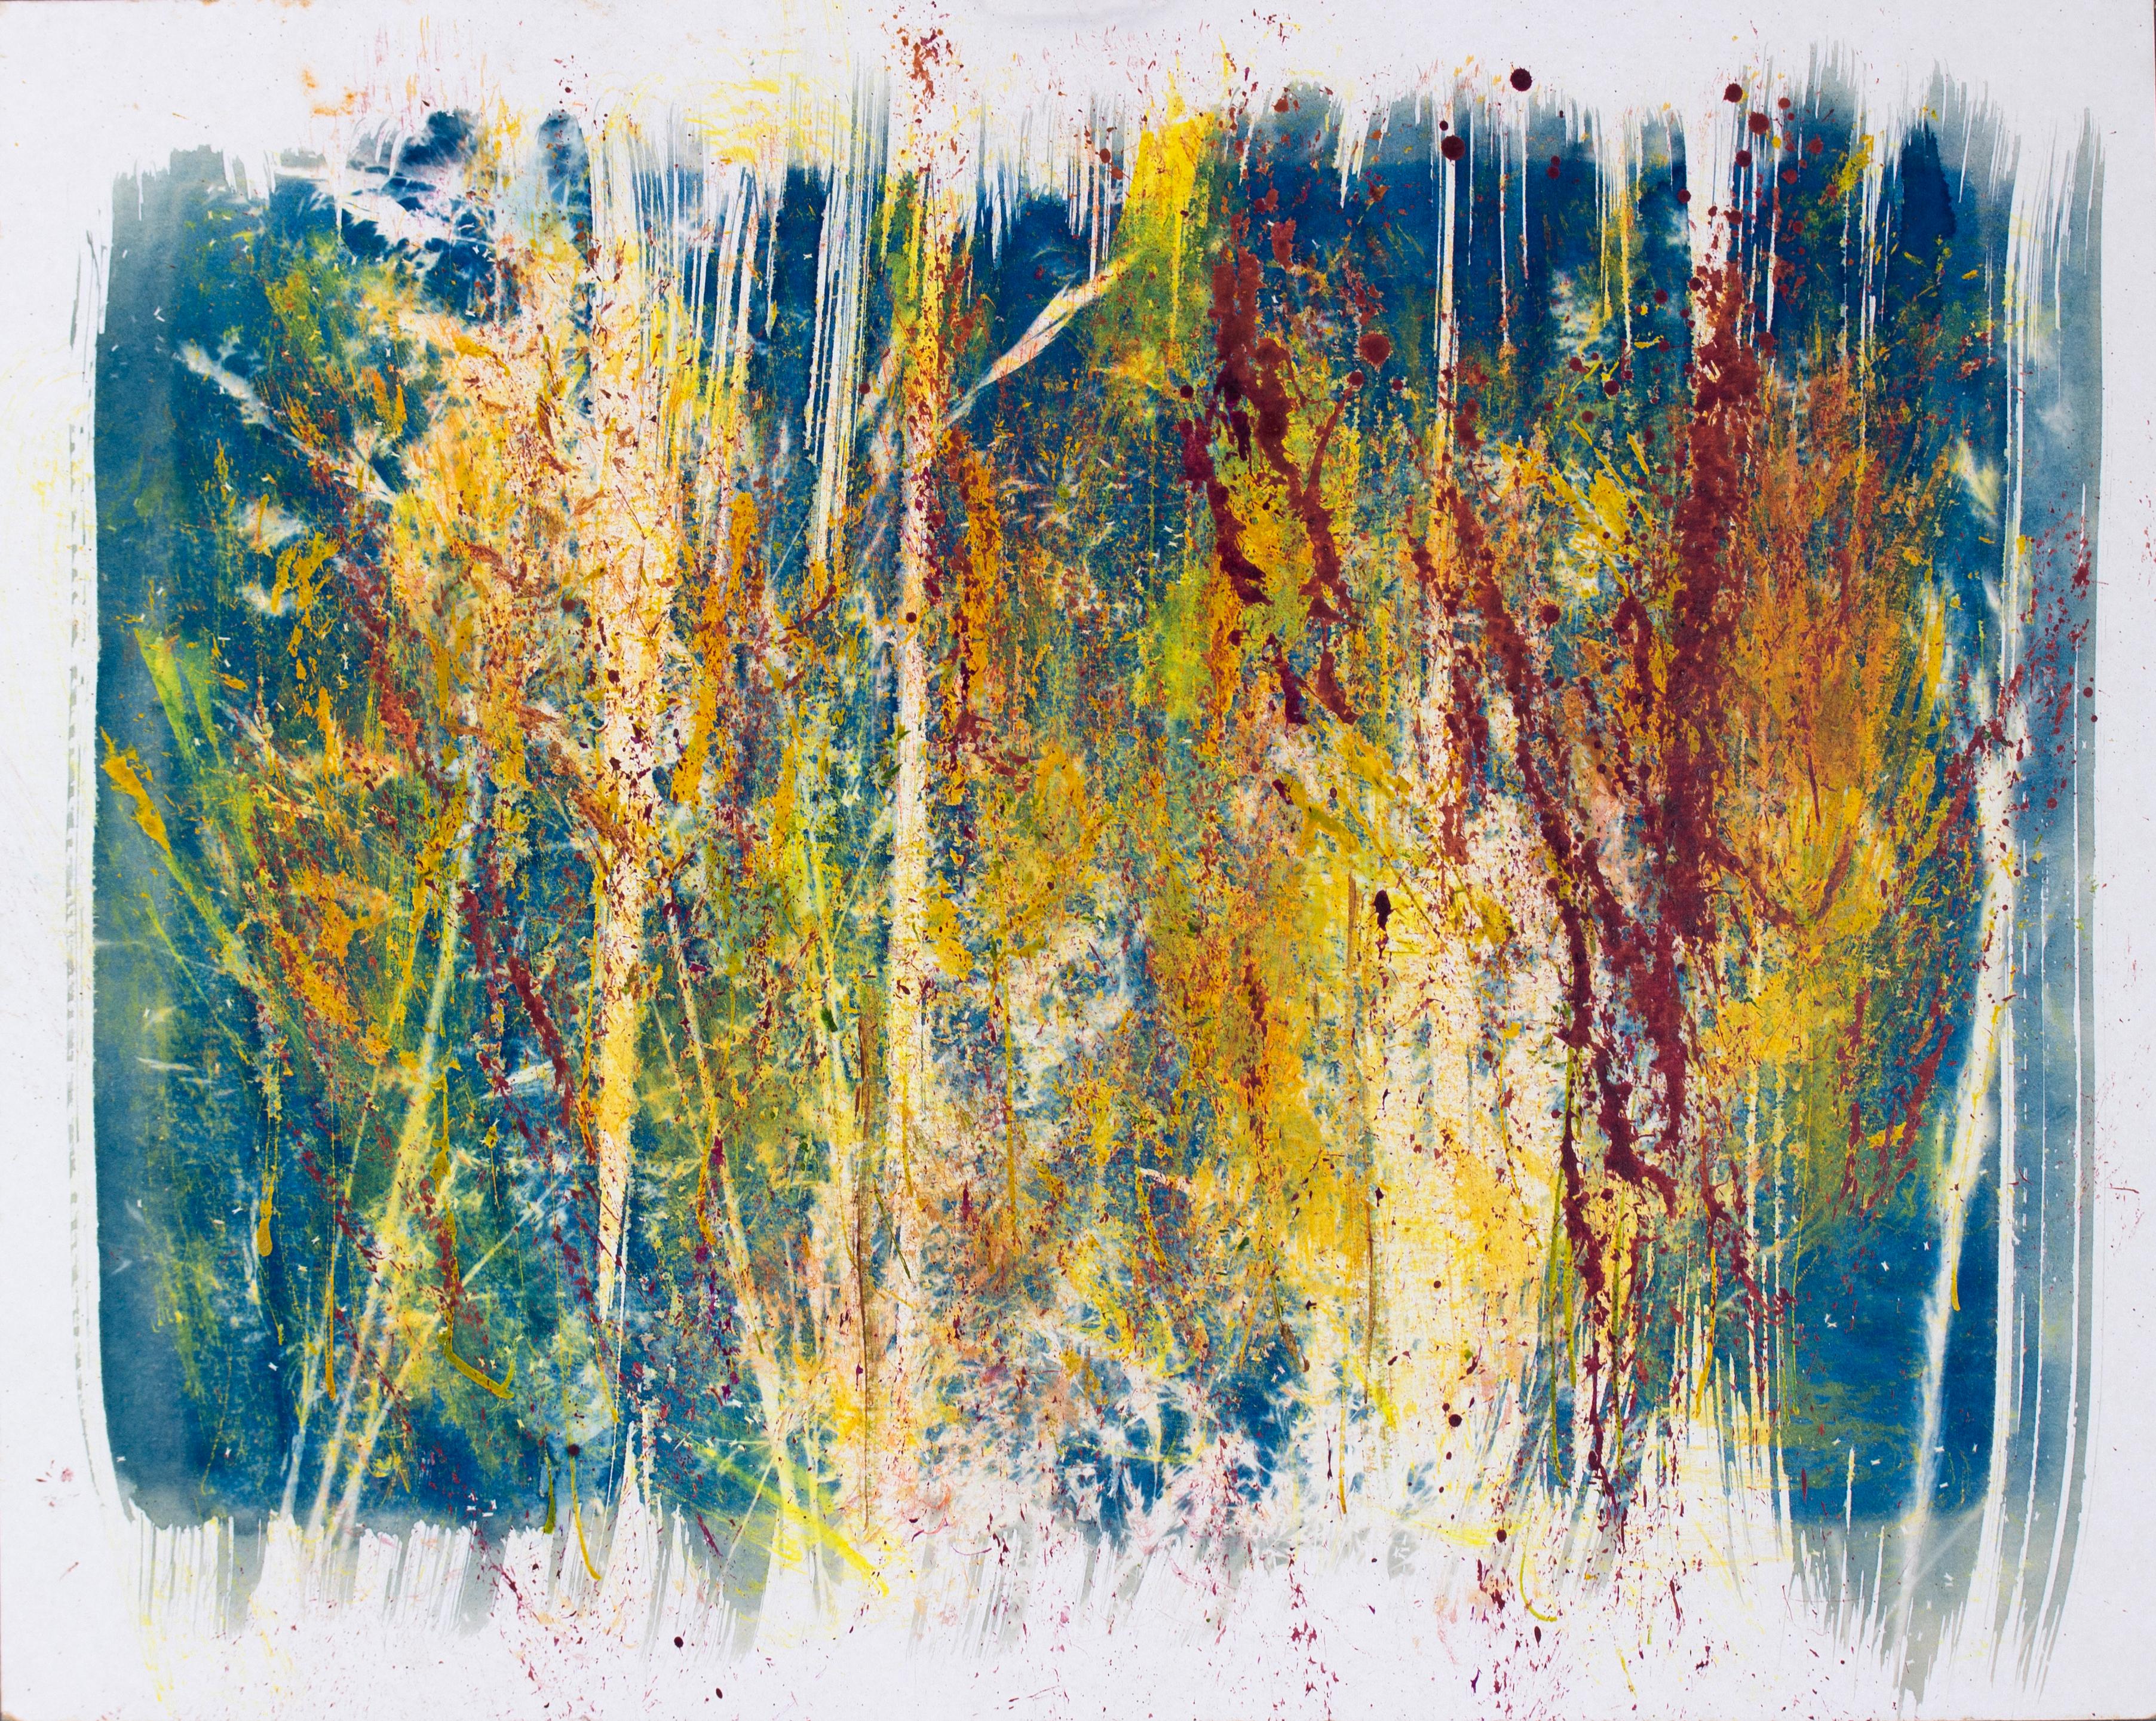 Abstract Painting Sophia Milligan - ''Belle négligence''. Paysage abstrait contemporain,  Bleu, jaune et rouge, nature